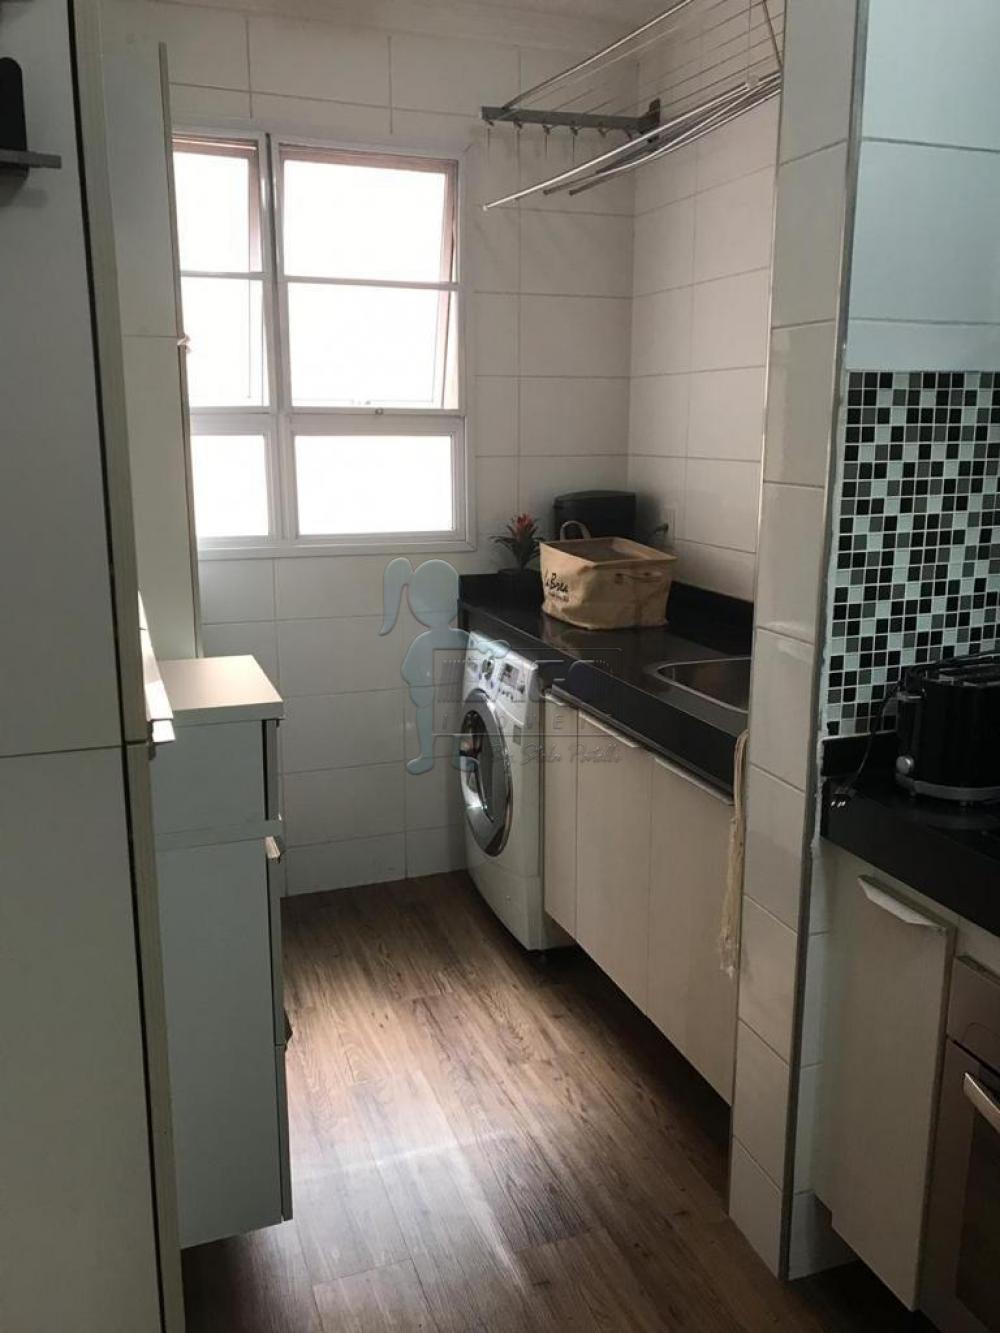 Comprar Apartamentos / Padrão em Ribeirão Preto R$ 430.000,00 - Foto 16